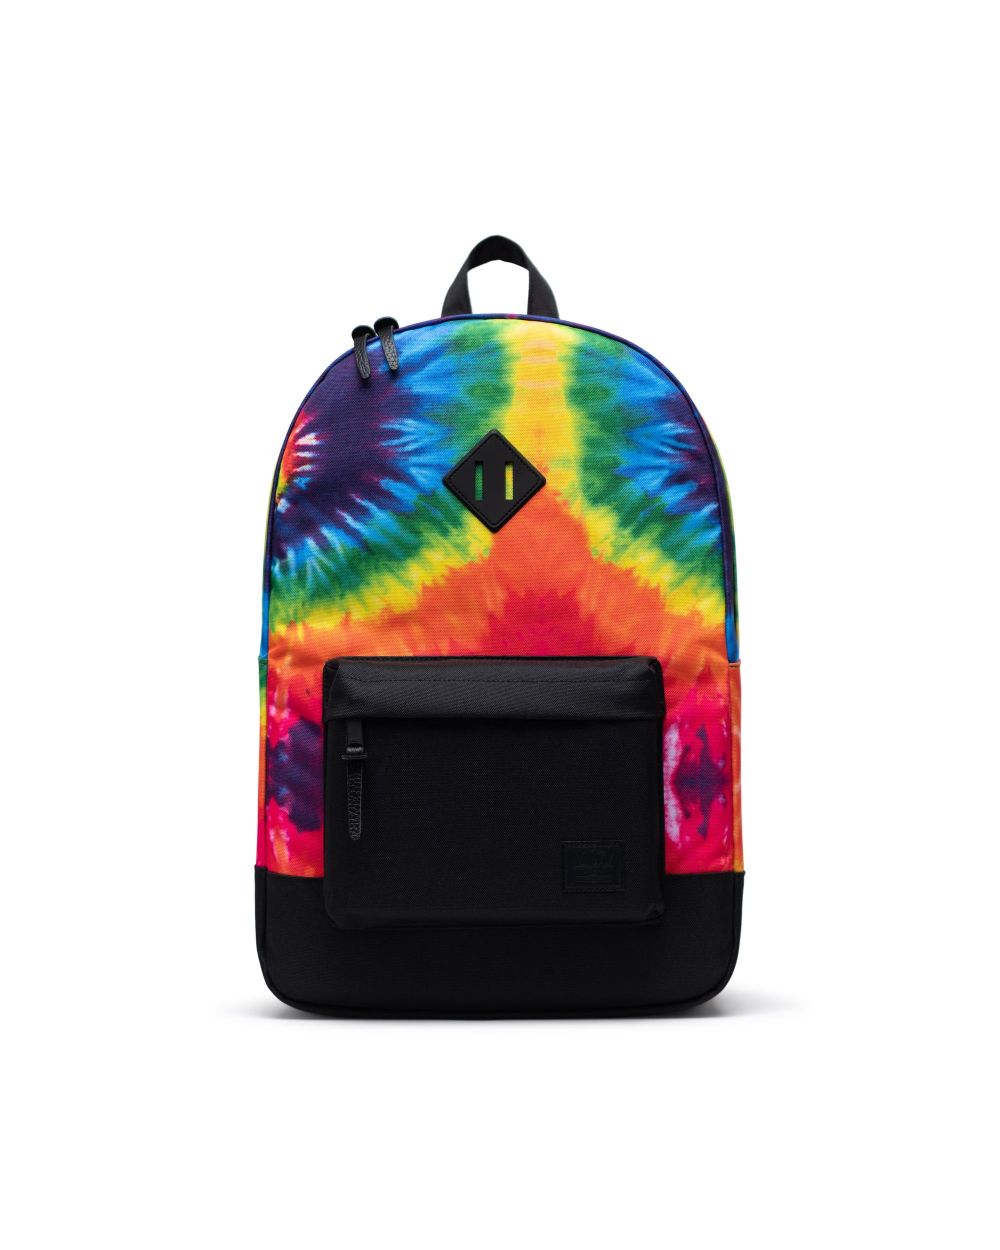 Herschel Supply Co. Heritage Backpack - Rainbow Tie Dye